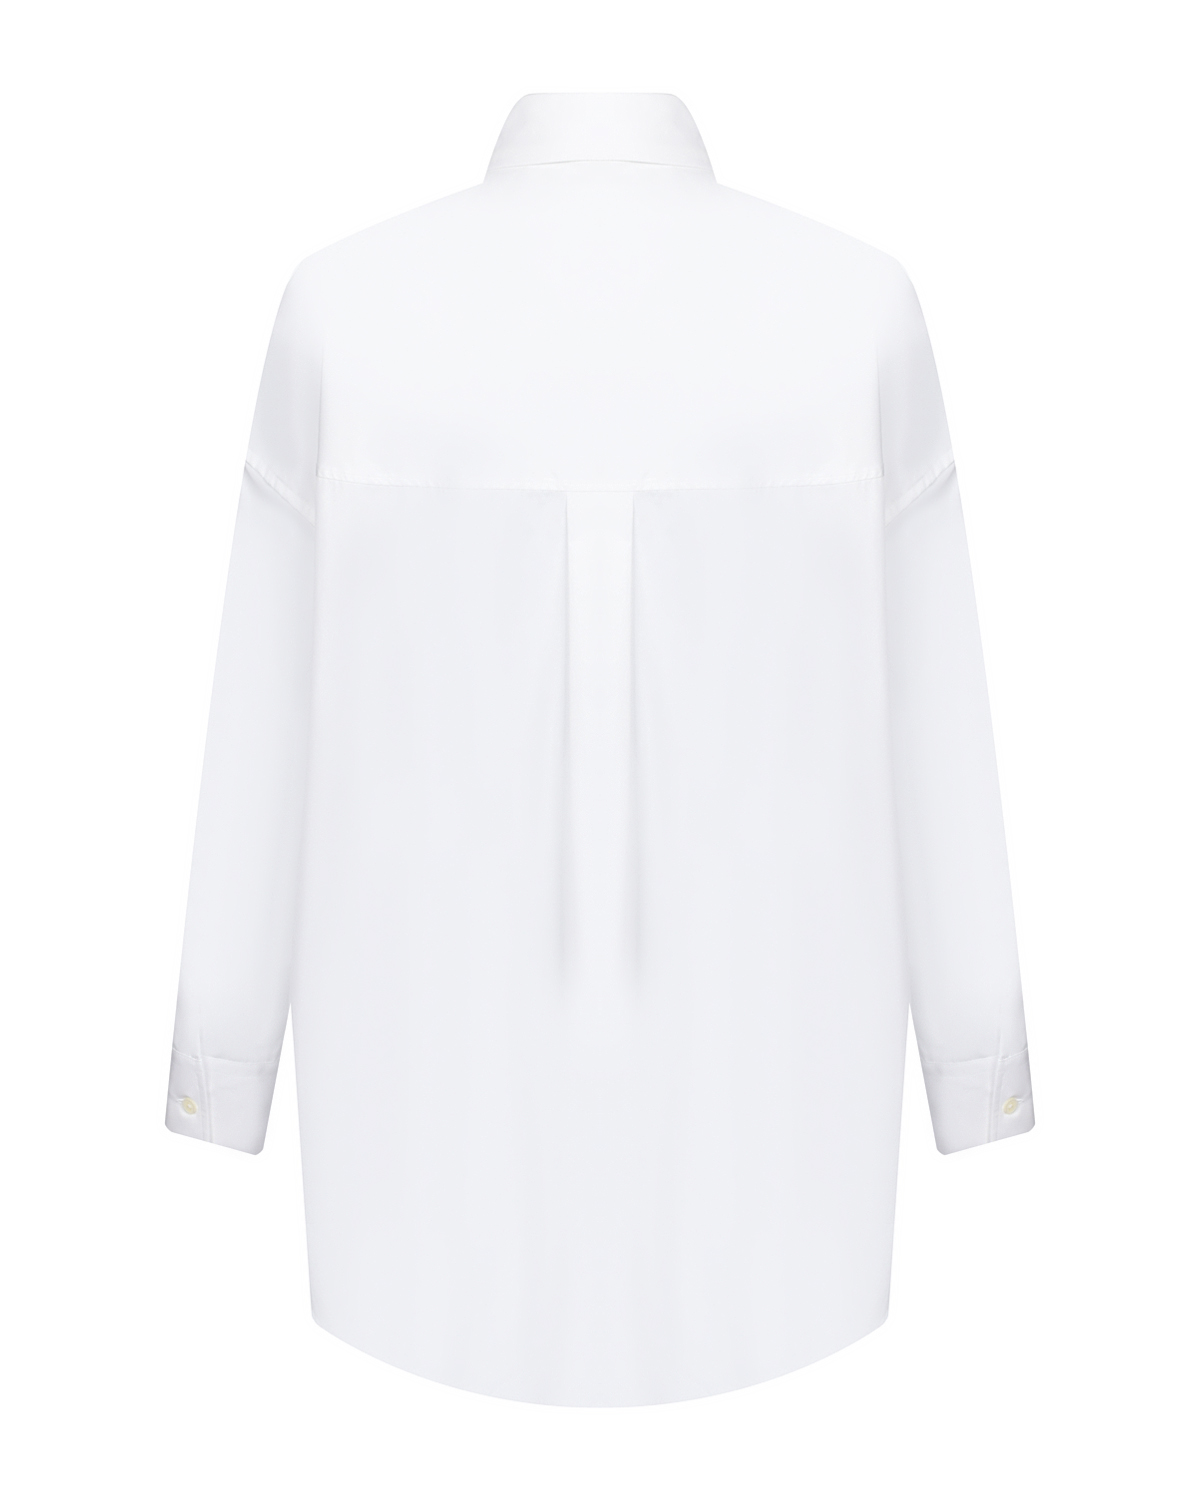 Белая рубашка с длинными рукавами Parosh, размер 44, цвет белый - фото 5